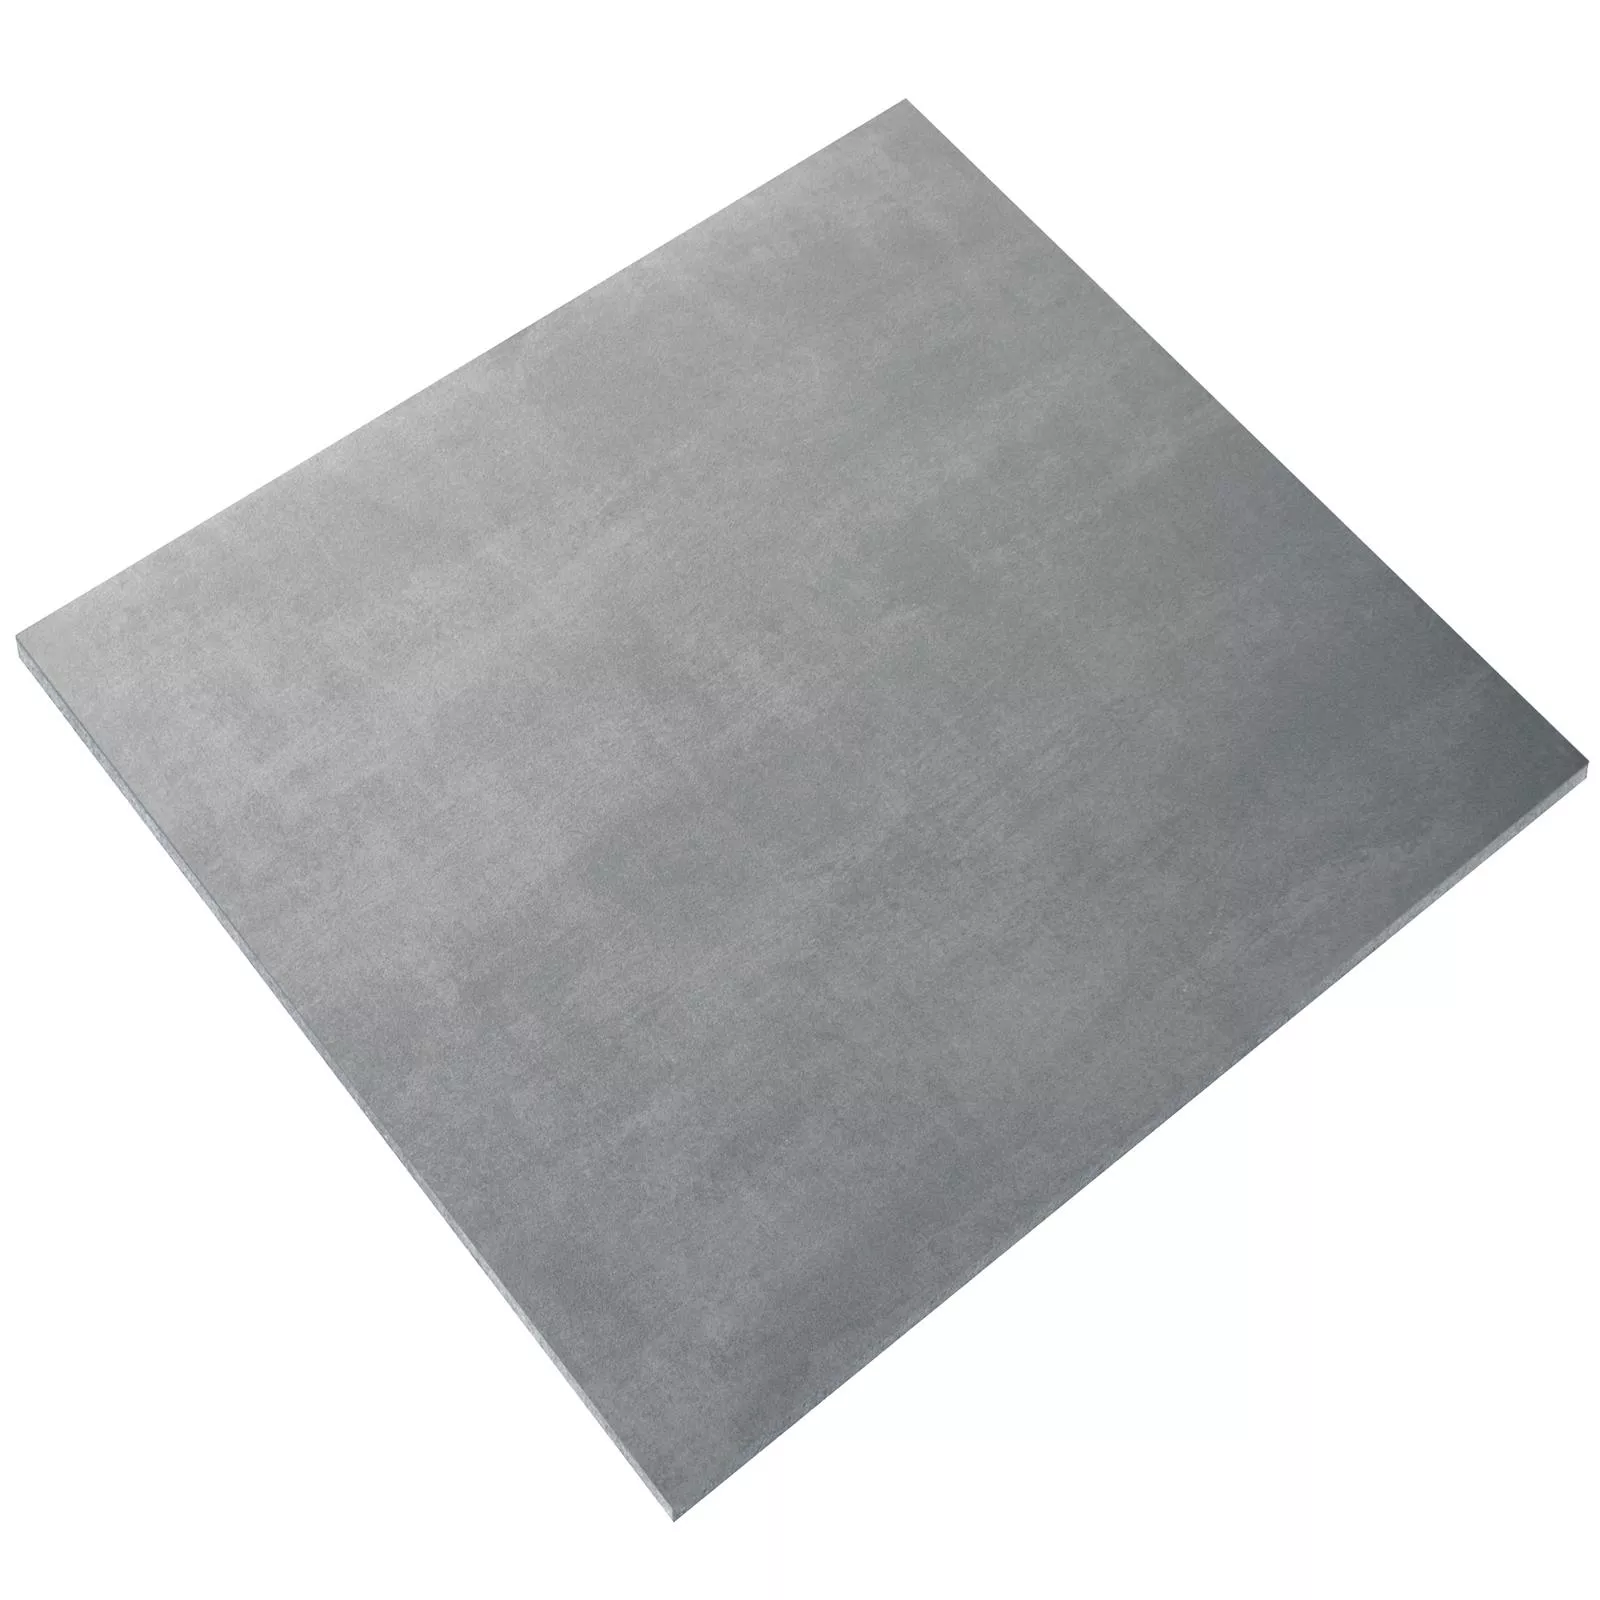 Sample Floor Tiles Beton Optic Noorvik Light Grey 60x60cm